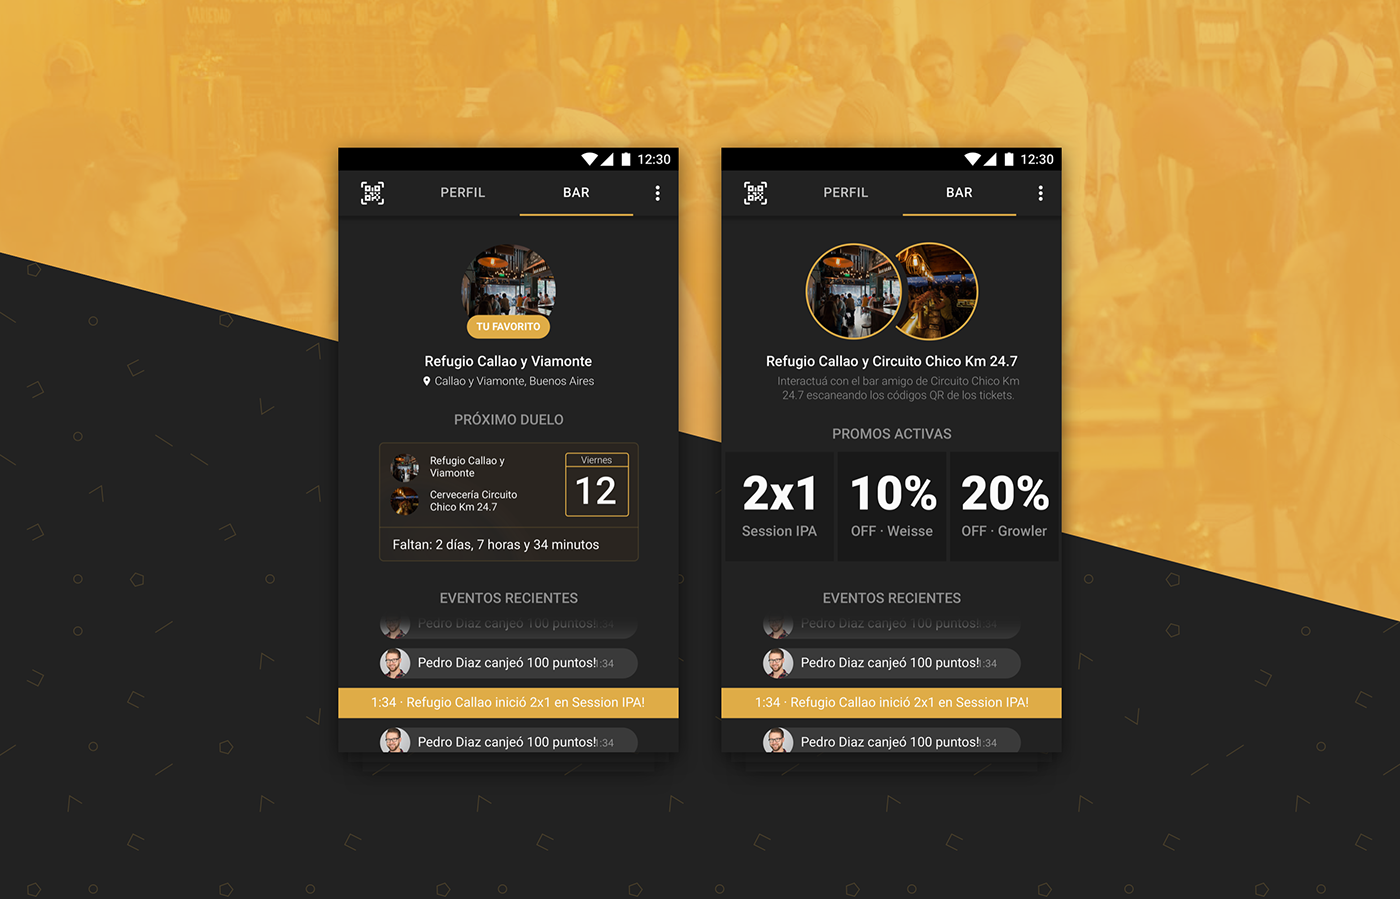 patagonia app application aplicación mobile Celular beer cerveza hackaton hackathon